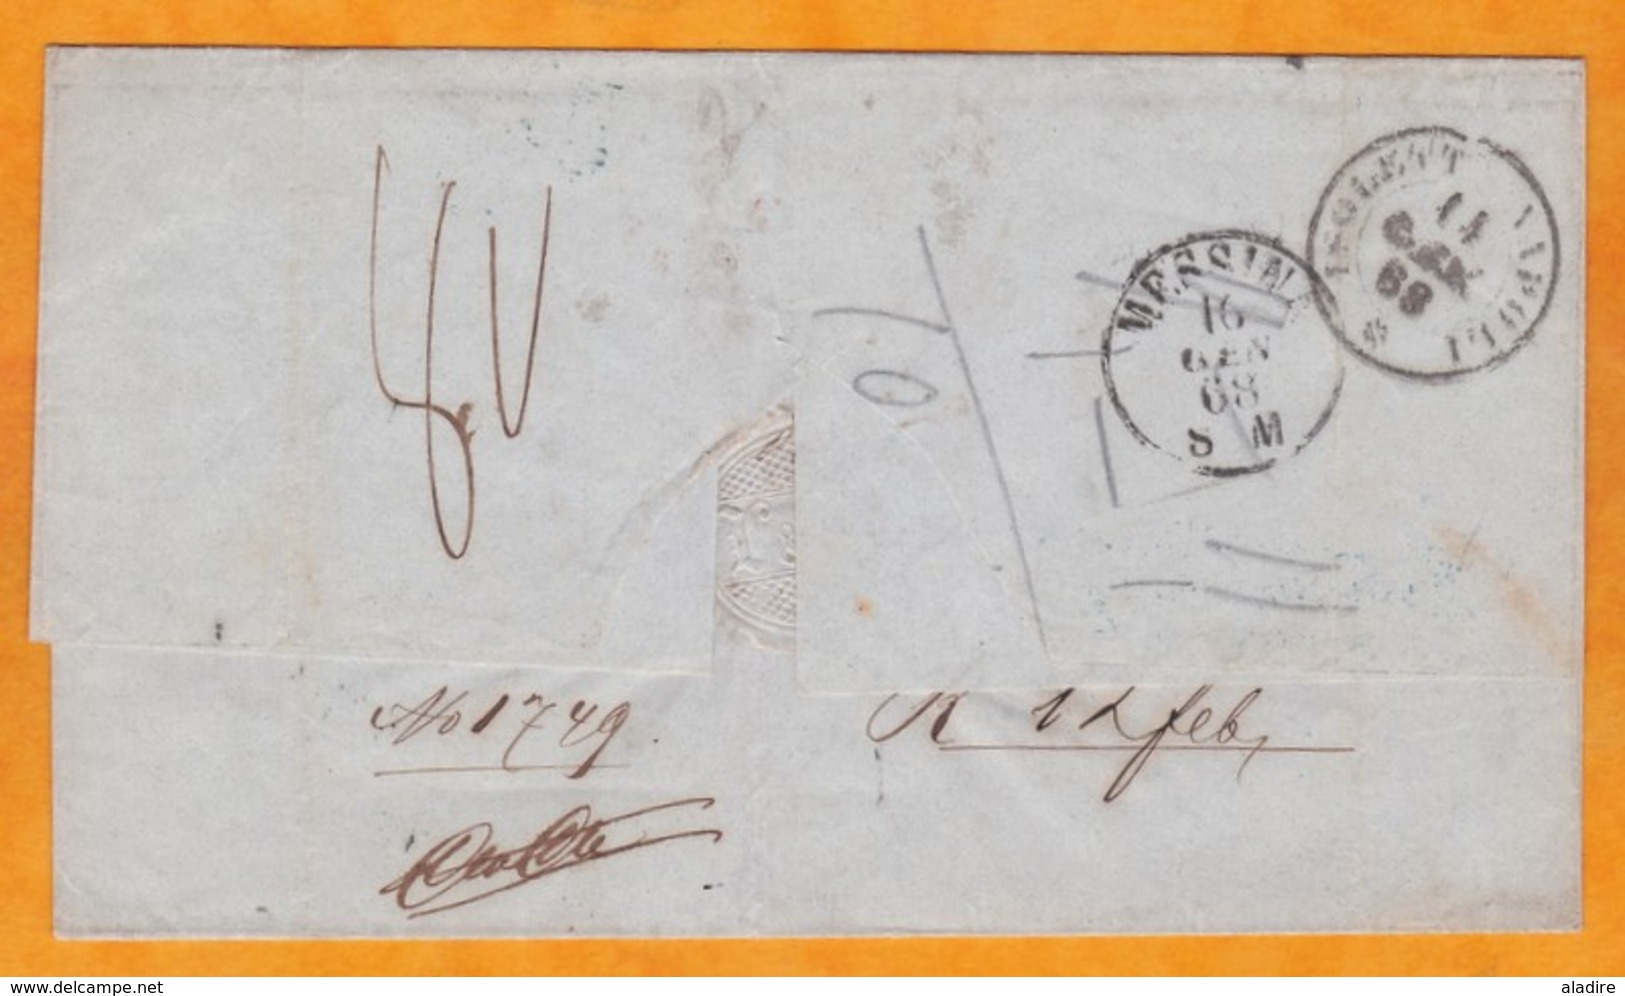 1868 - enveloppe pliée d' Amsterdam, Pays Bas via la France vers Messina, Sicile - cad transit et arrivée